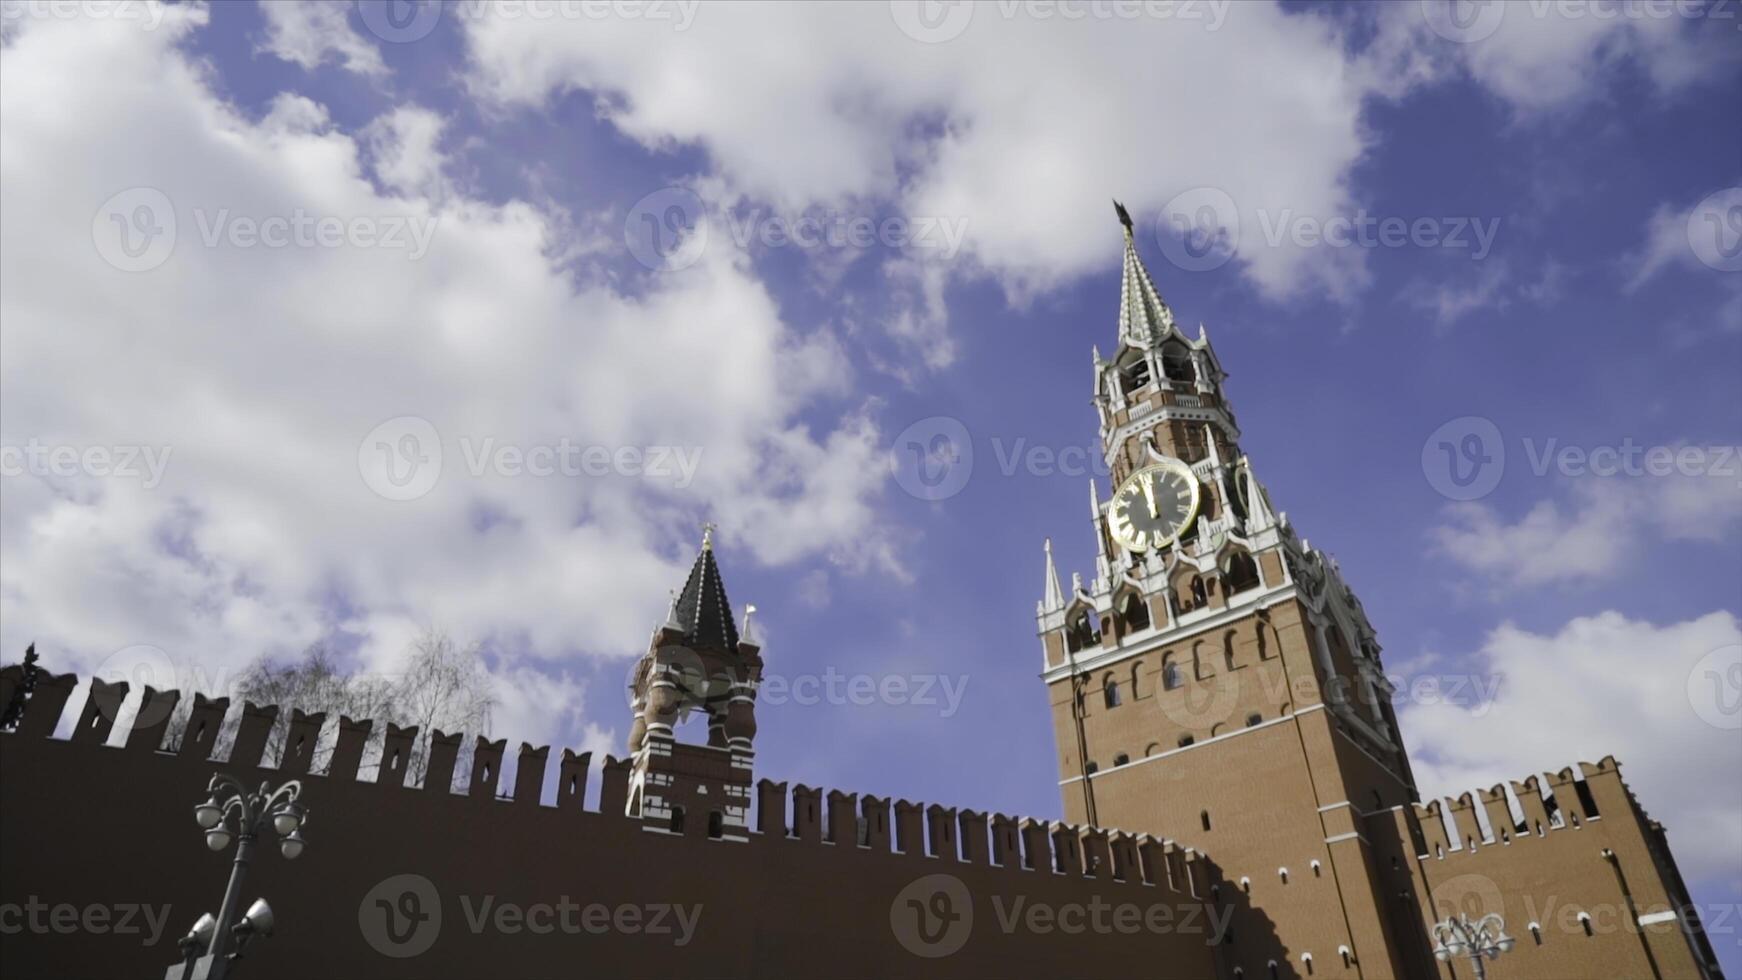 röd kreml fästning och spasskaya torn på bakgrund av blå himmel. handling. topp av röd fästning vägg och kreml klocka torn foto